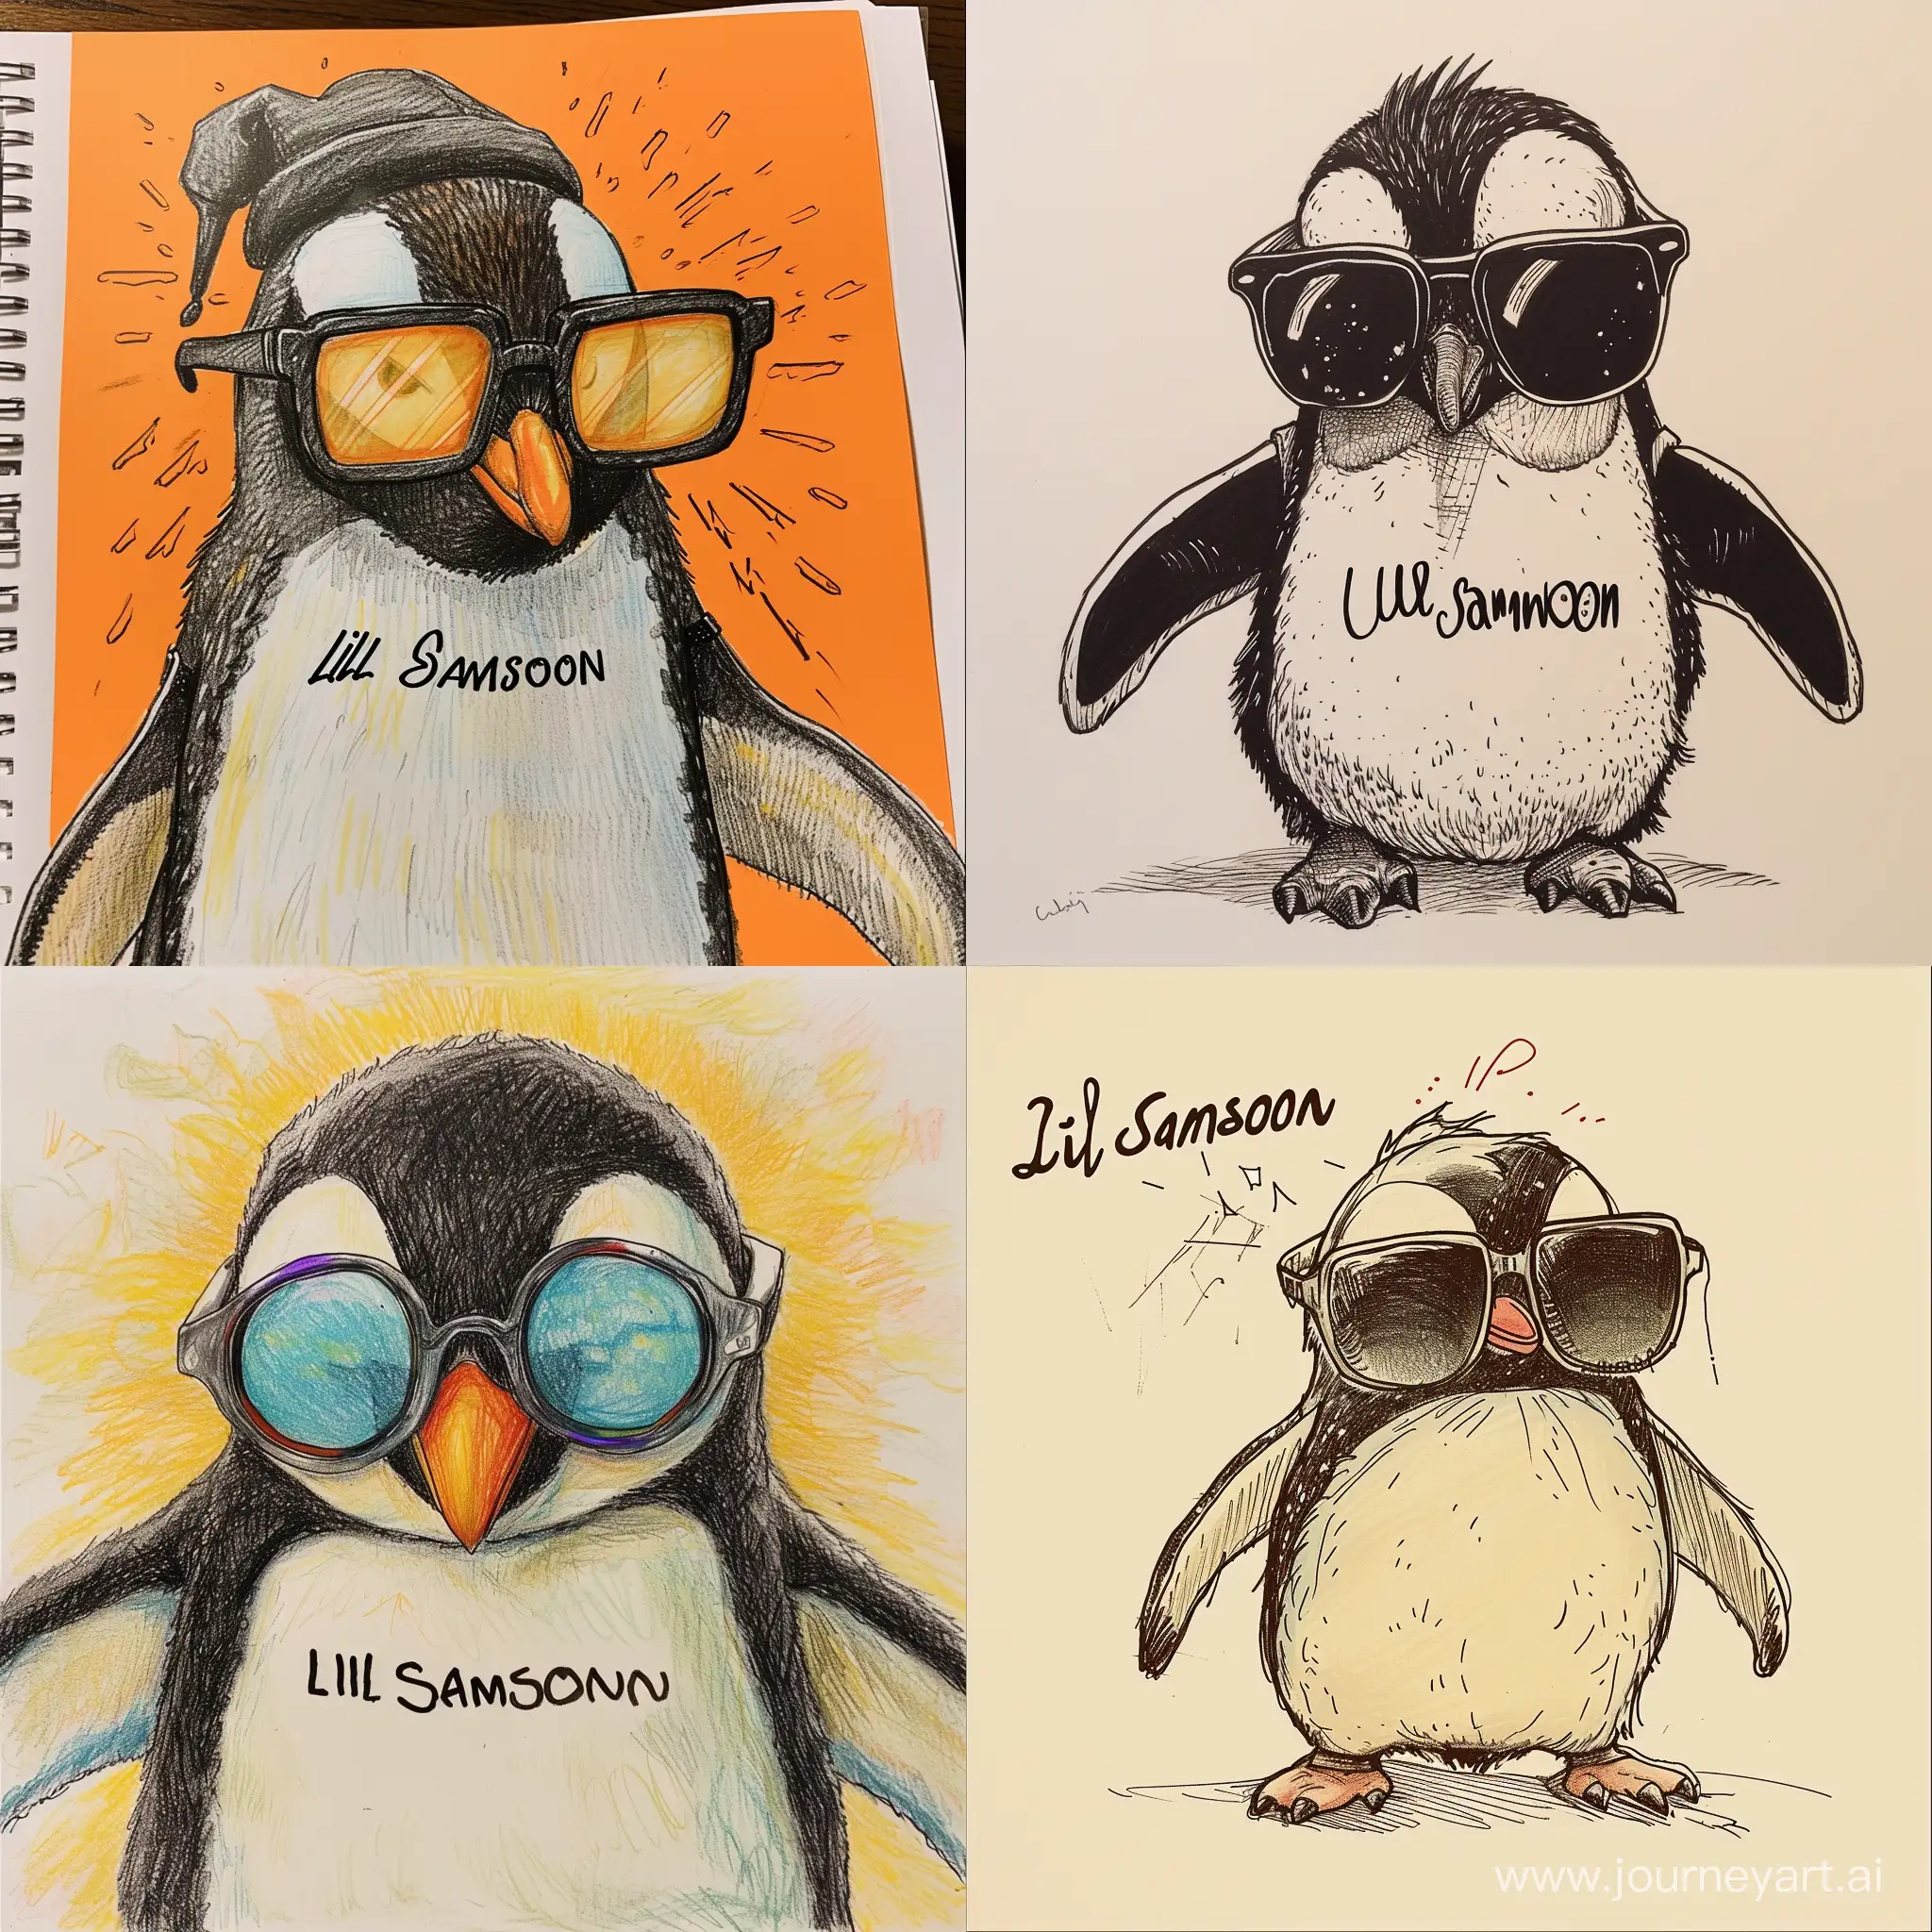 рисунок пингвина в реперских очках с надписью lil samson